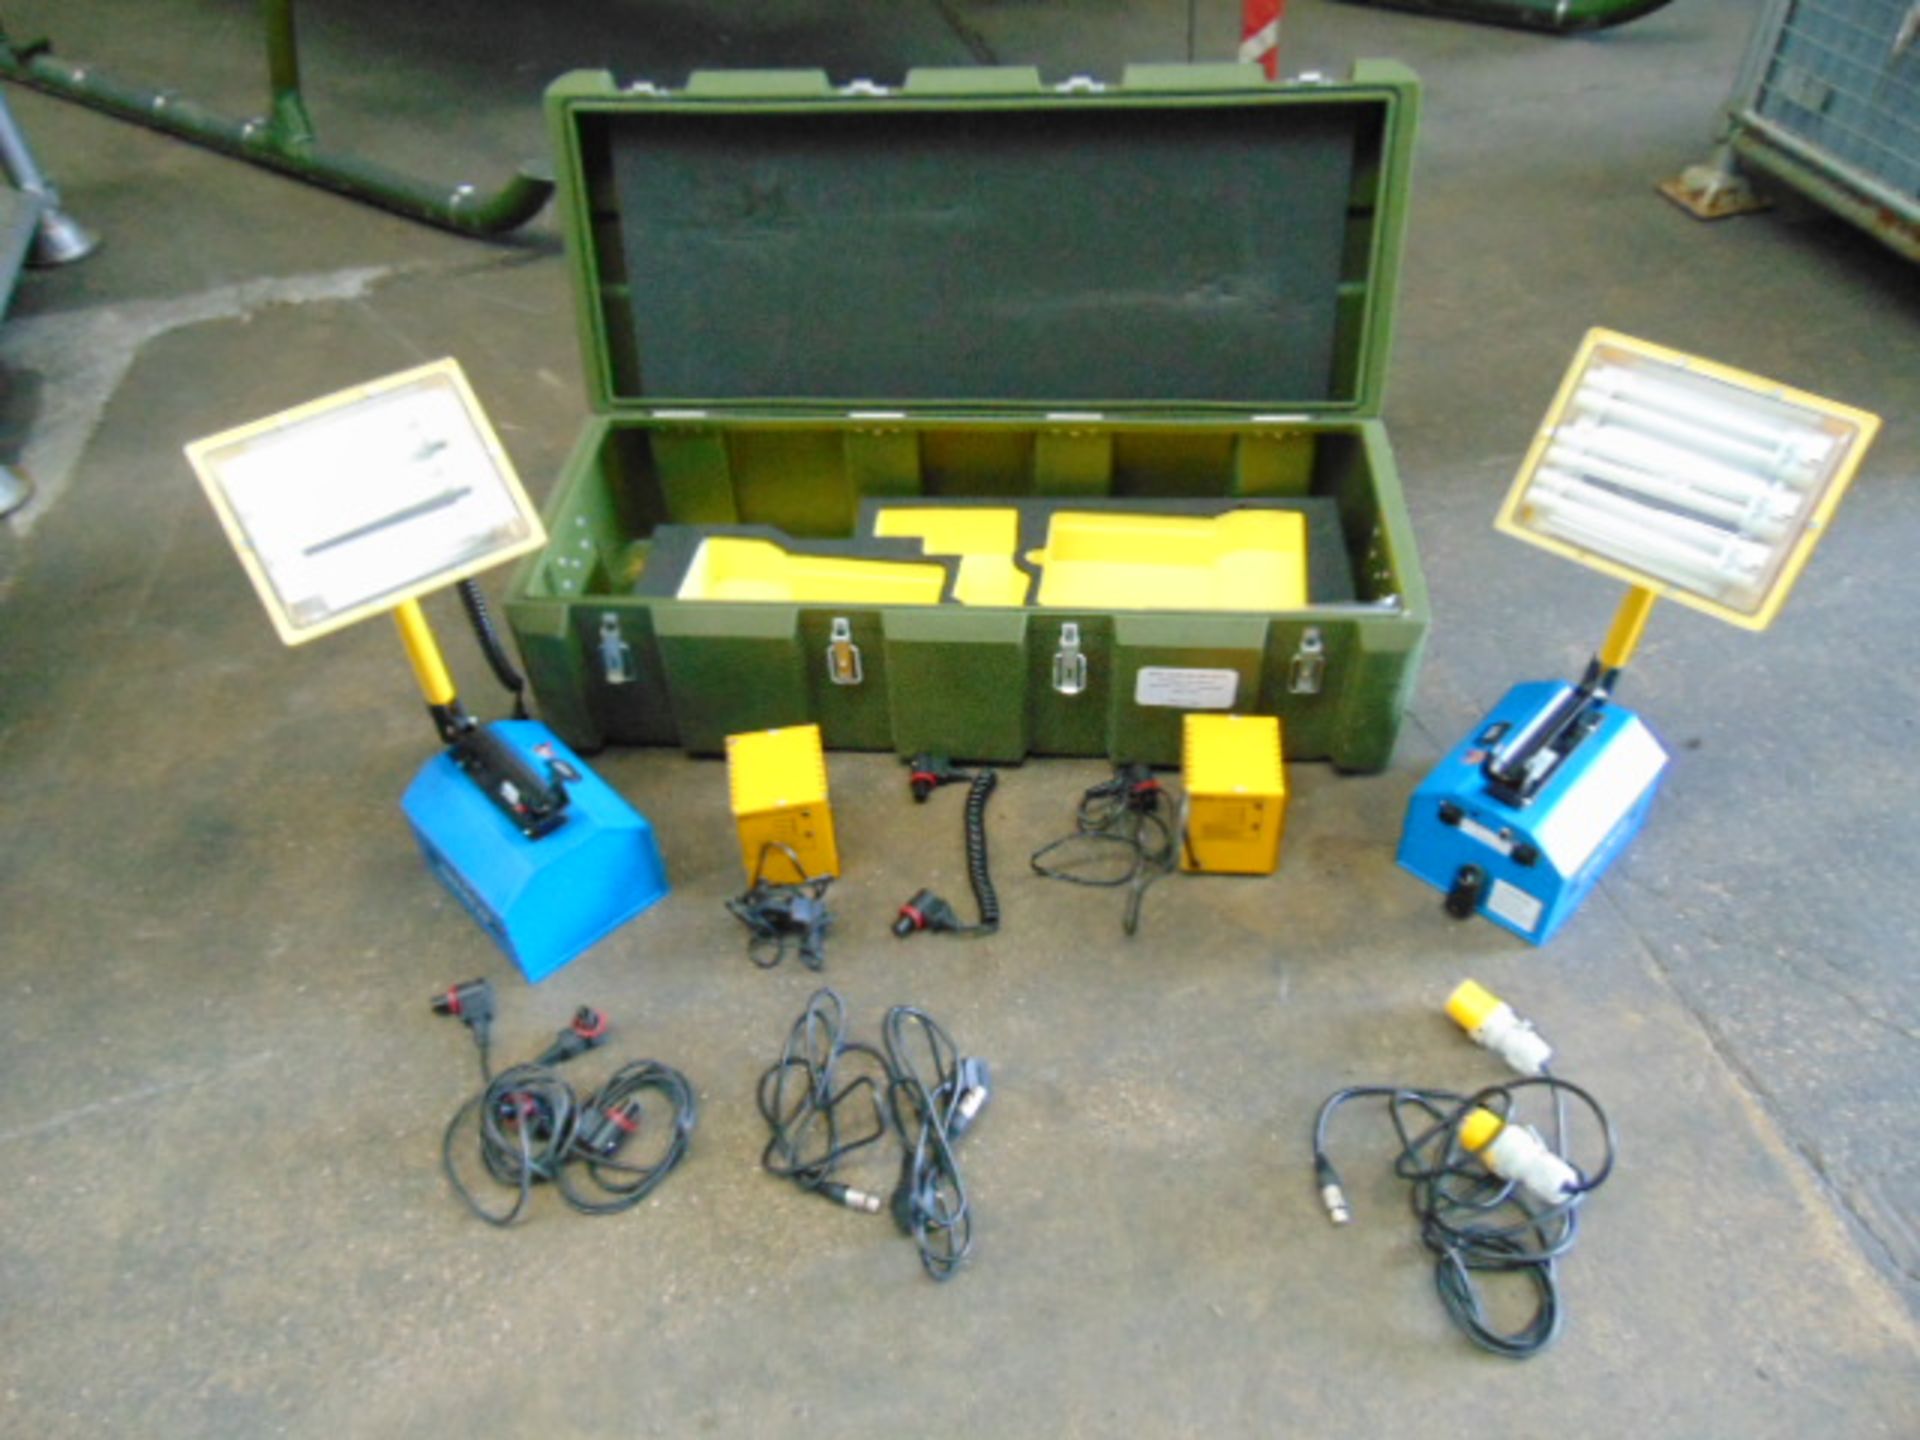 Supalite K9 Twin Portable Lighting Unit Kit in Transit Case